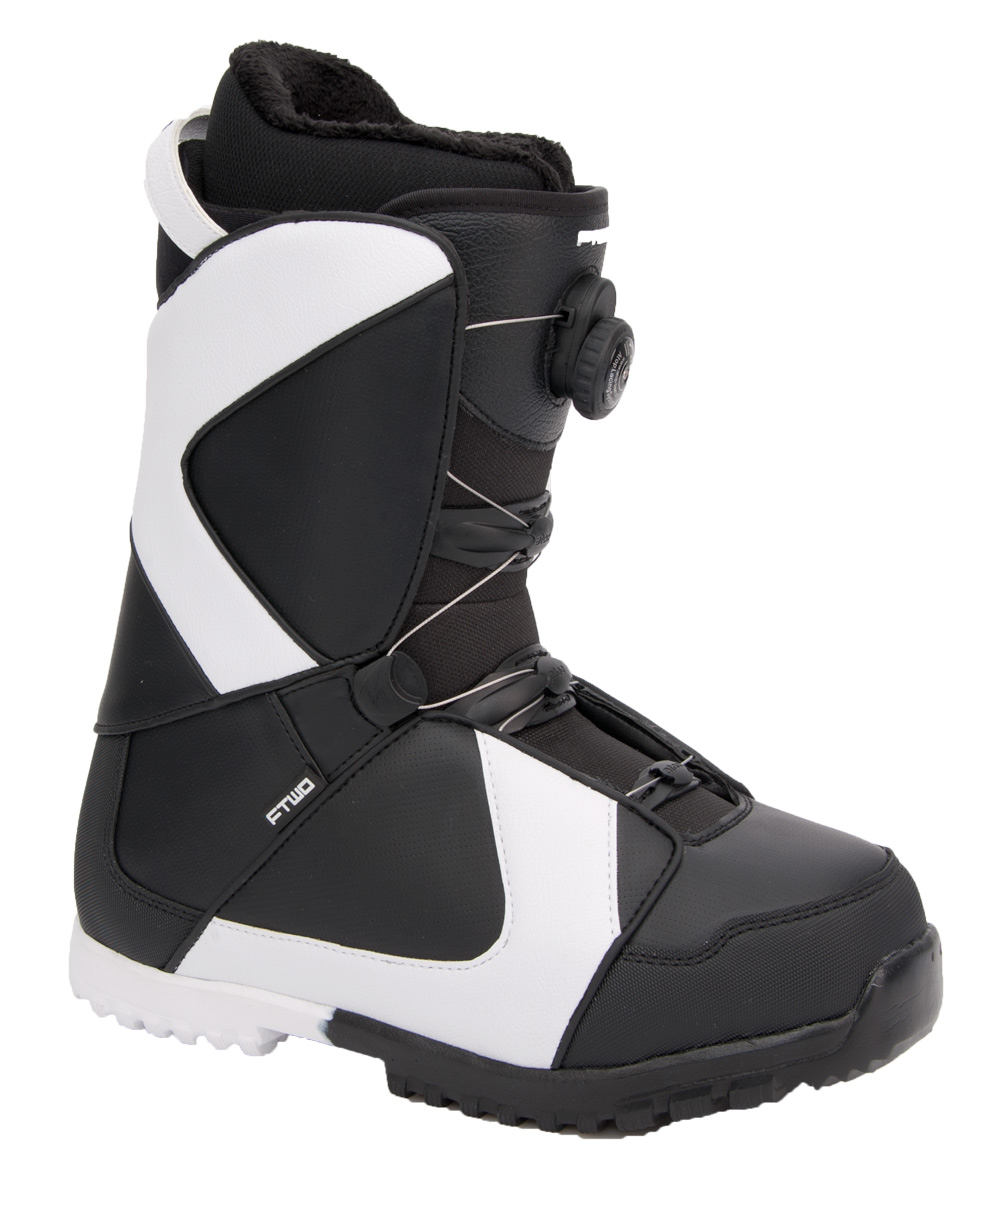 Ботинки сноубордические F2 Air размер 30,0 black/black 